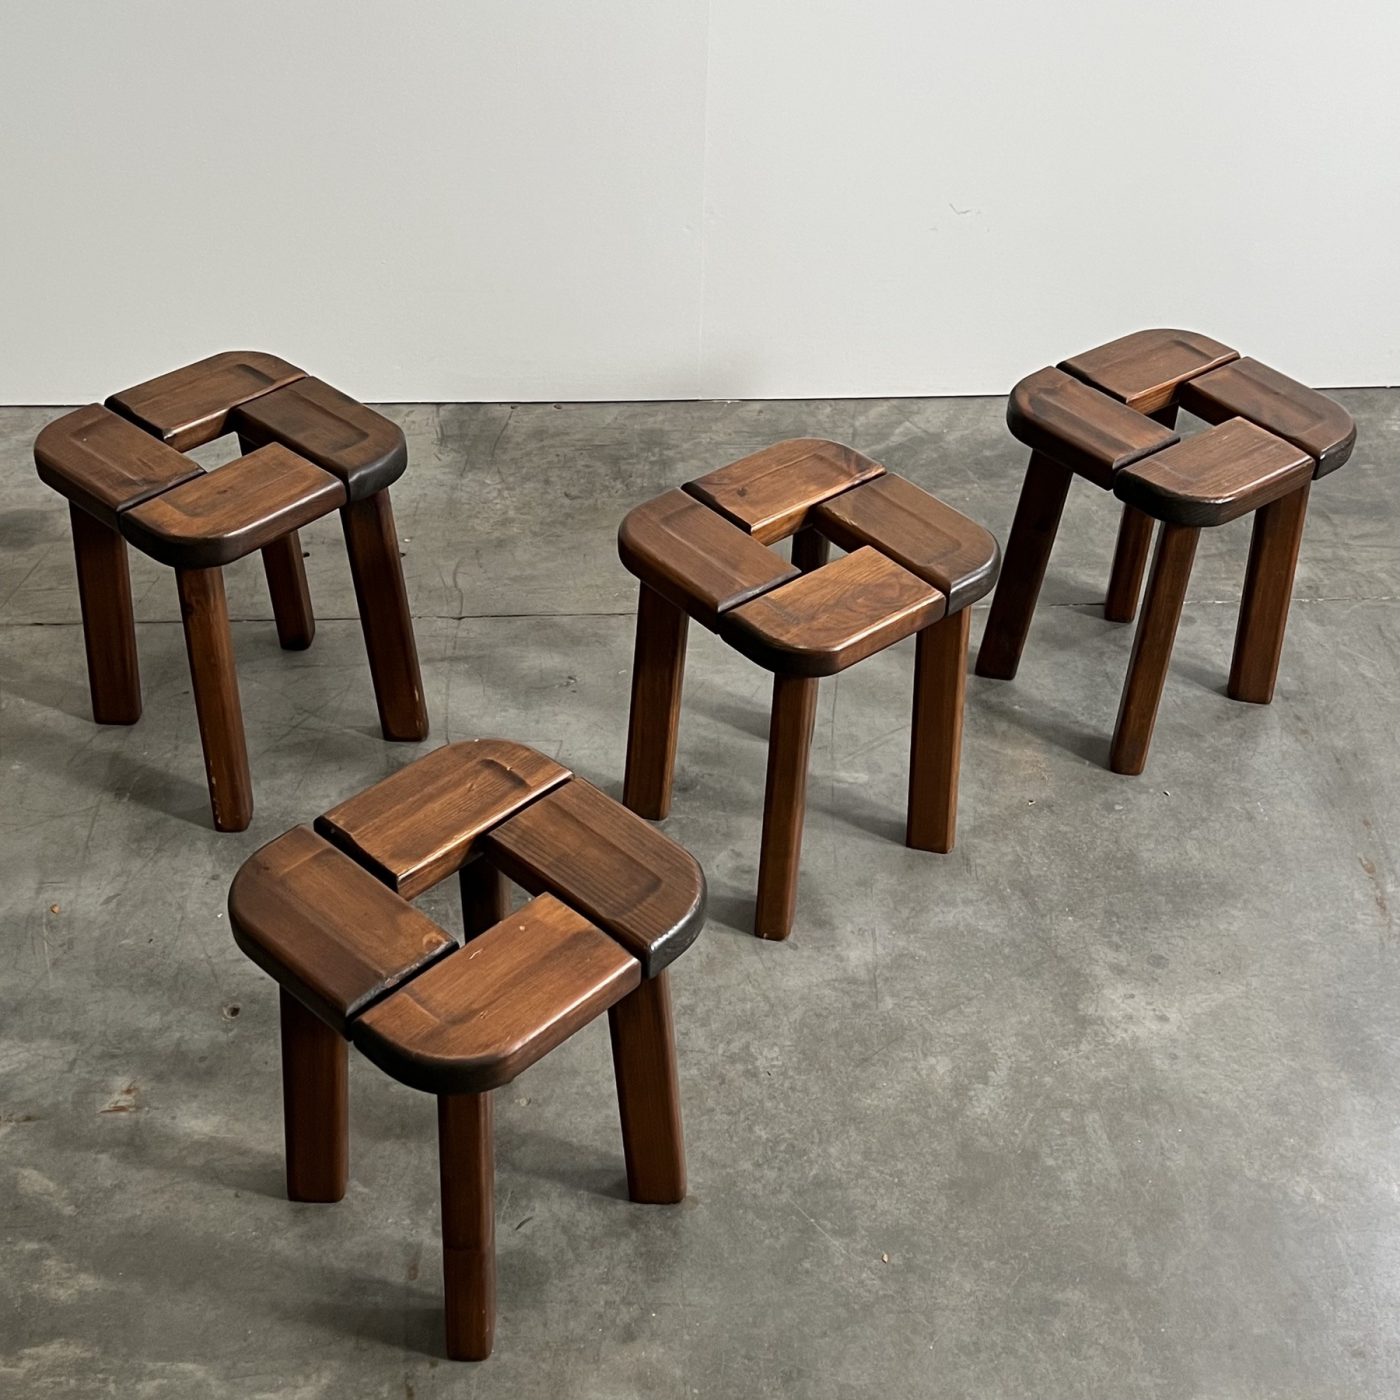 objet-vagabond-vintage-stools0007